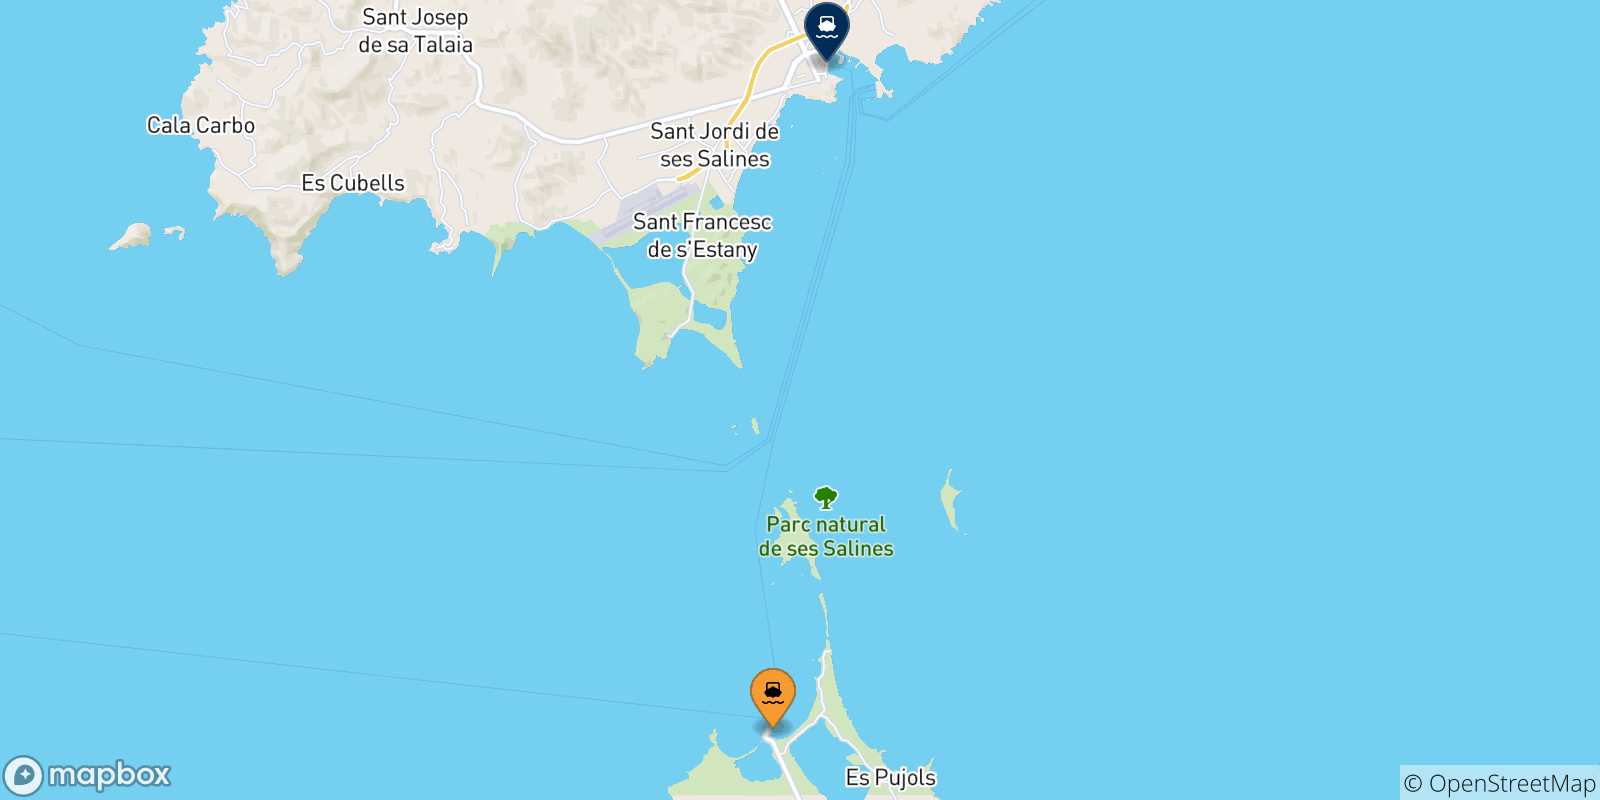 Mappa delle possibili rotte tra Formentera e le Isole Baleari